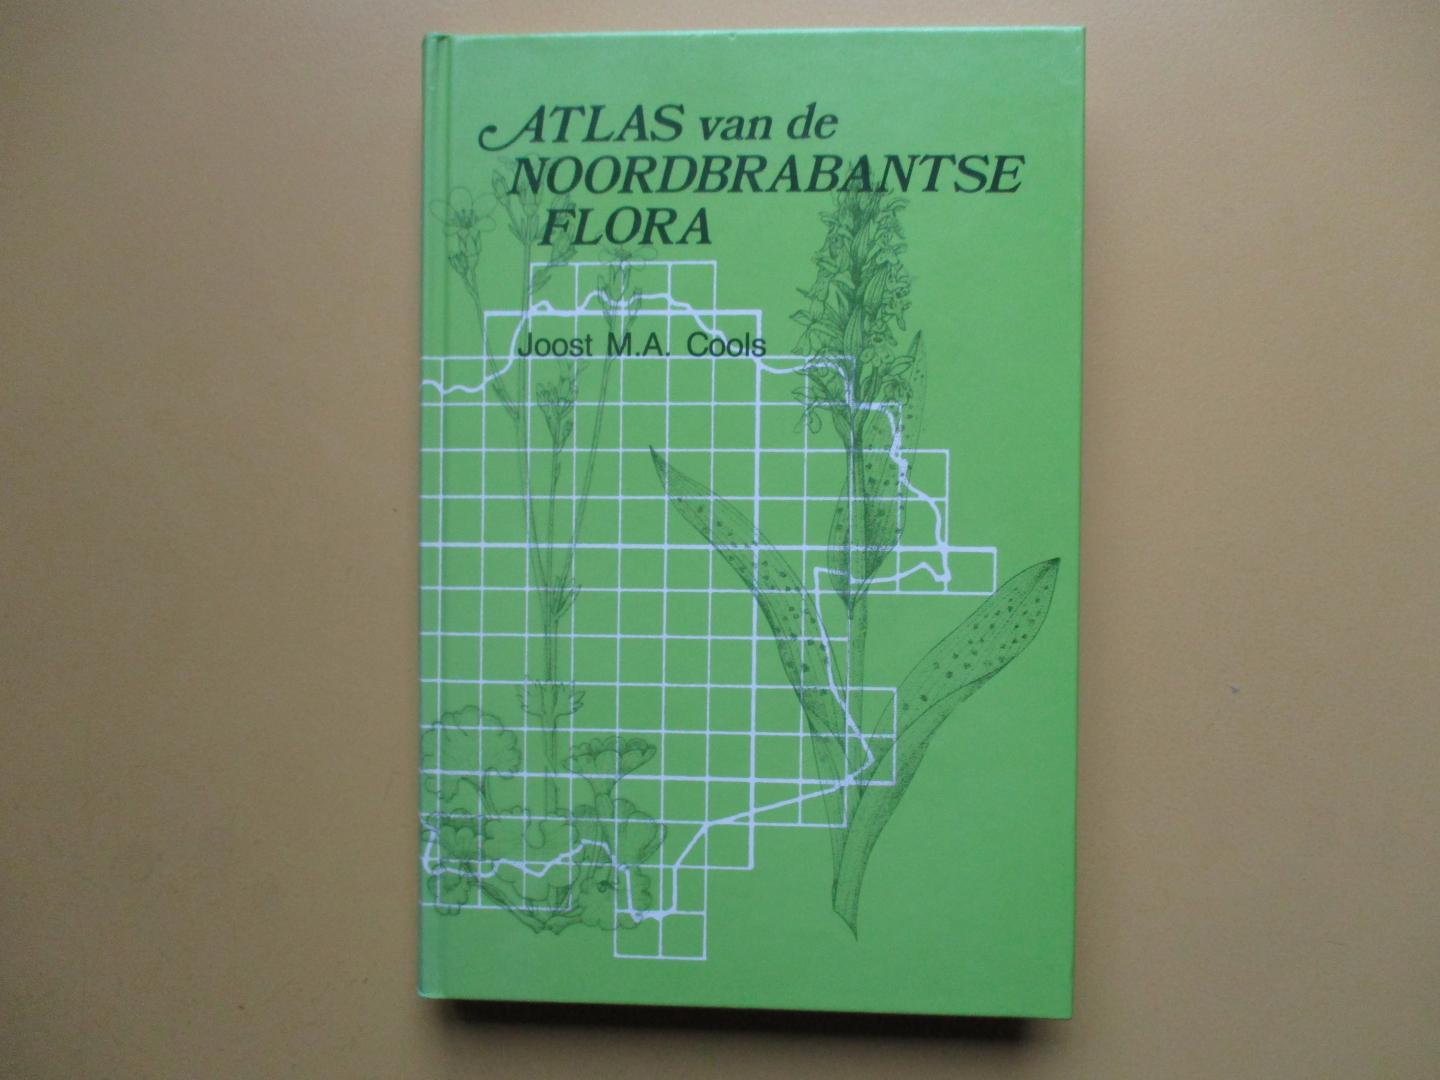 Cools, Joost M. A. - Atlas van de noordbrabantse flora / druk 1